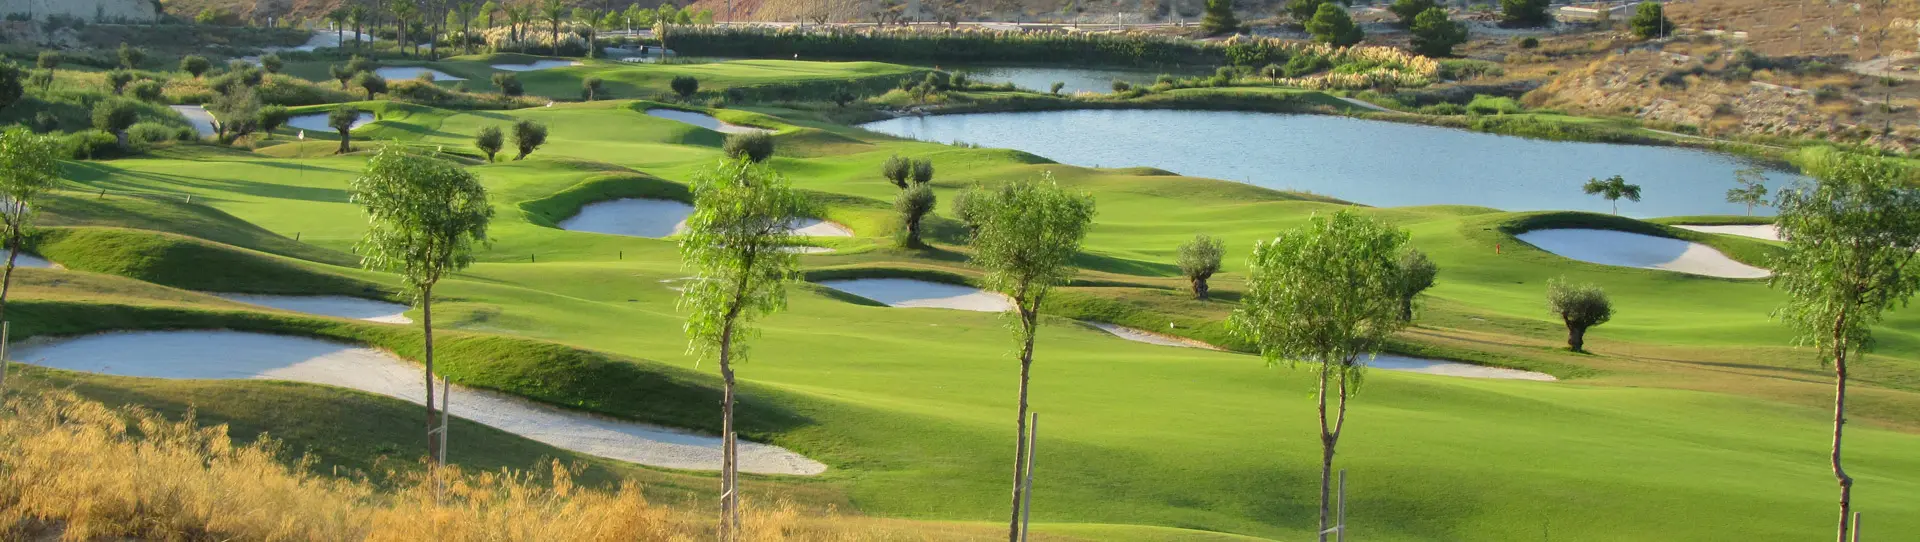 Spain golf courses - Font del Llop Golf Course - Photo 3